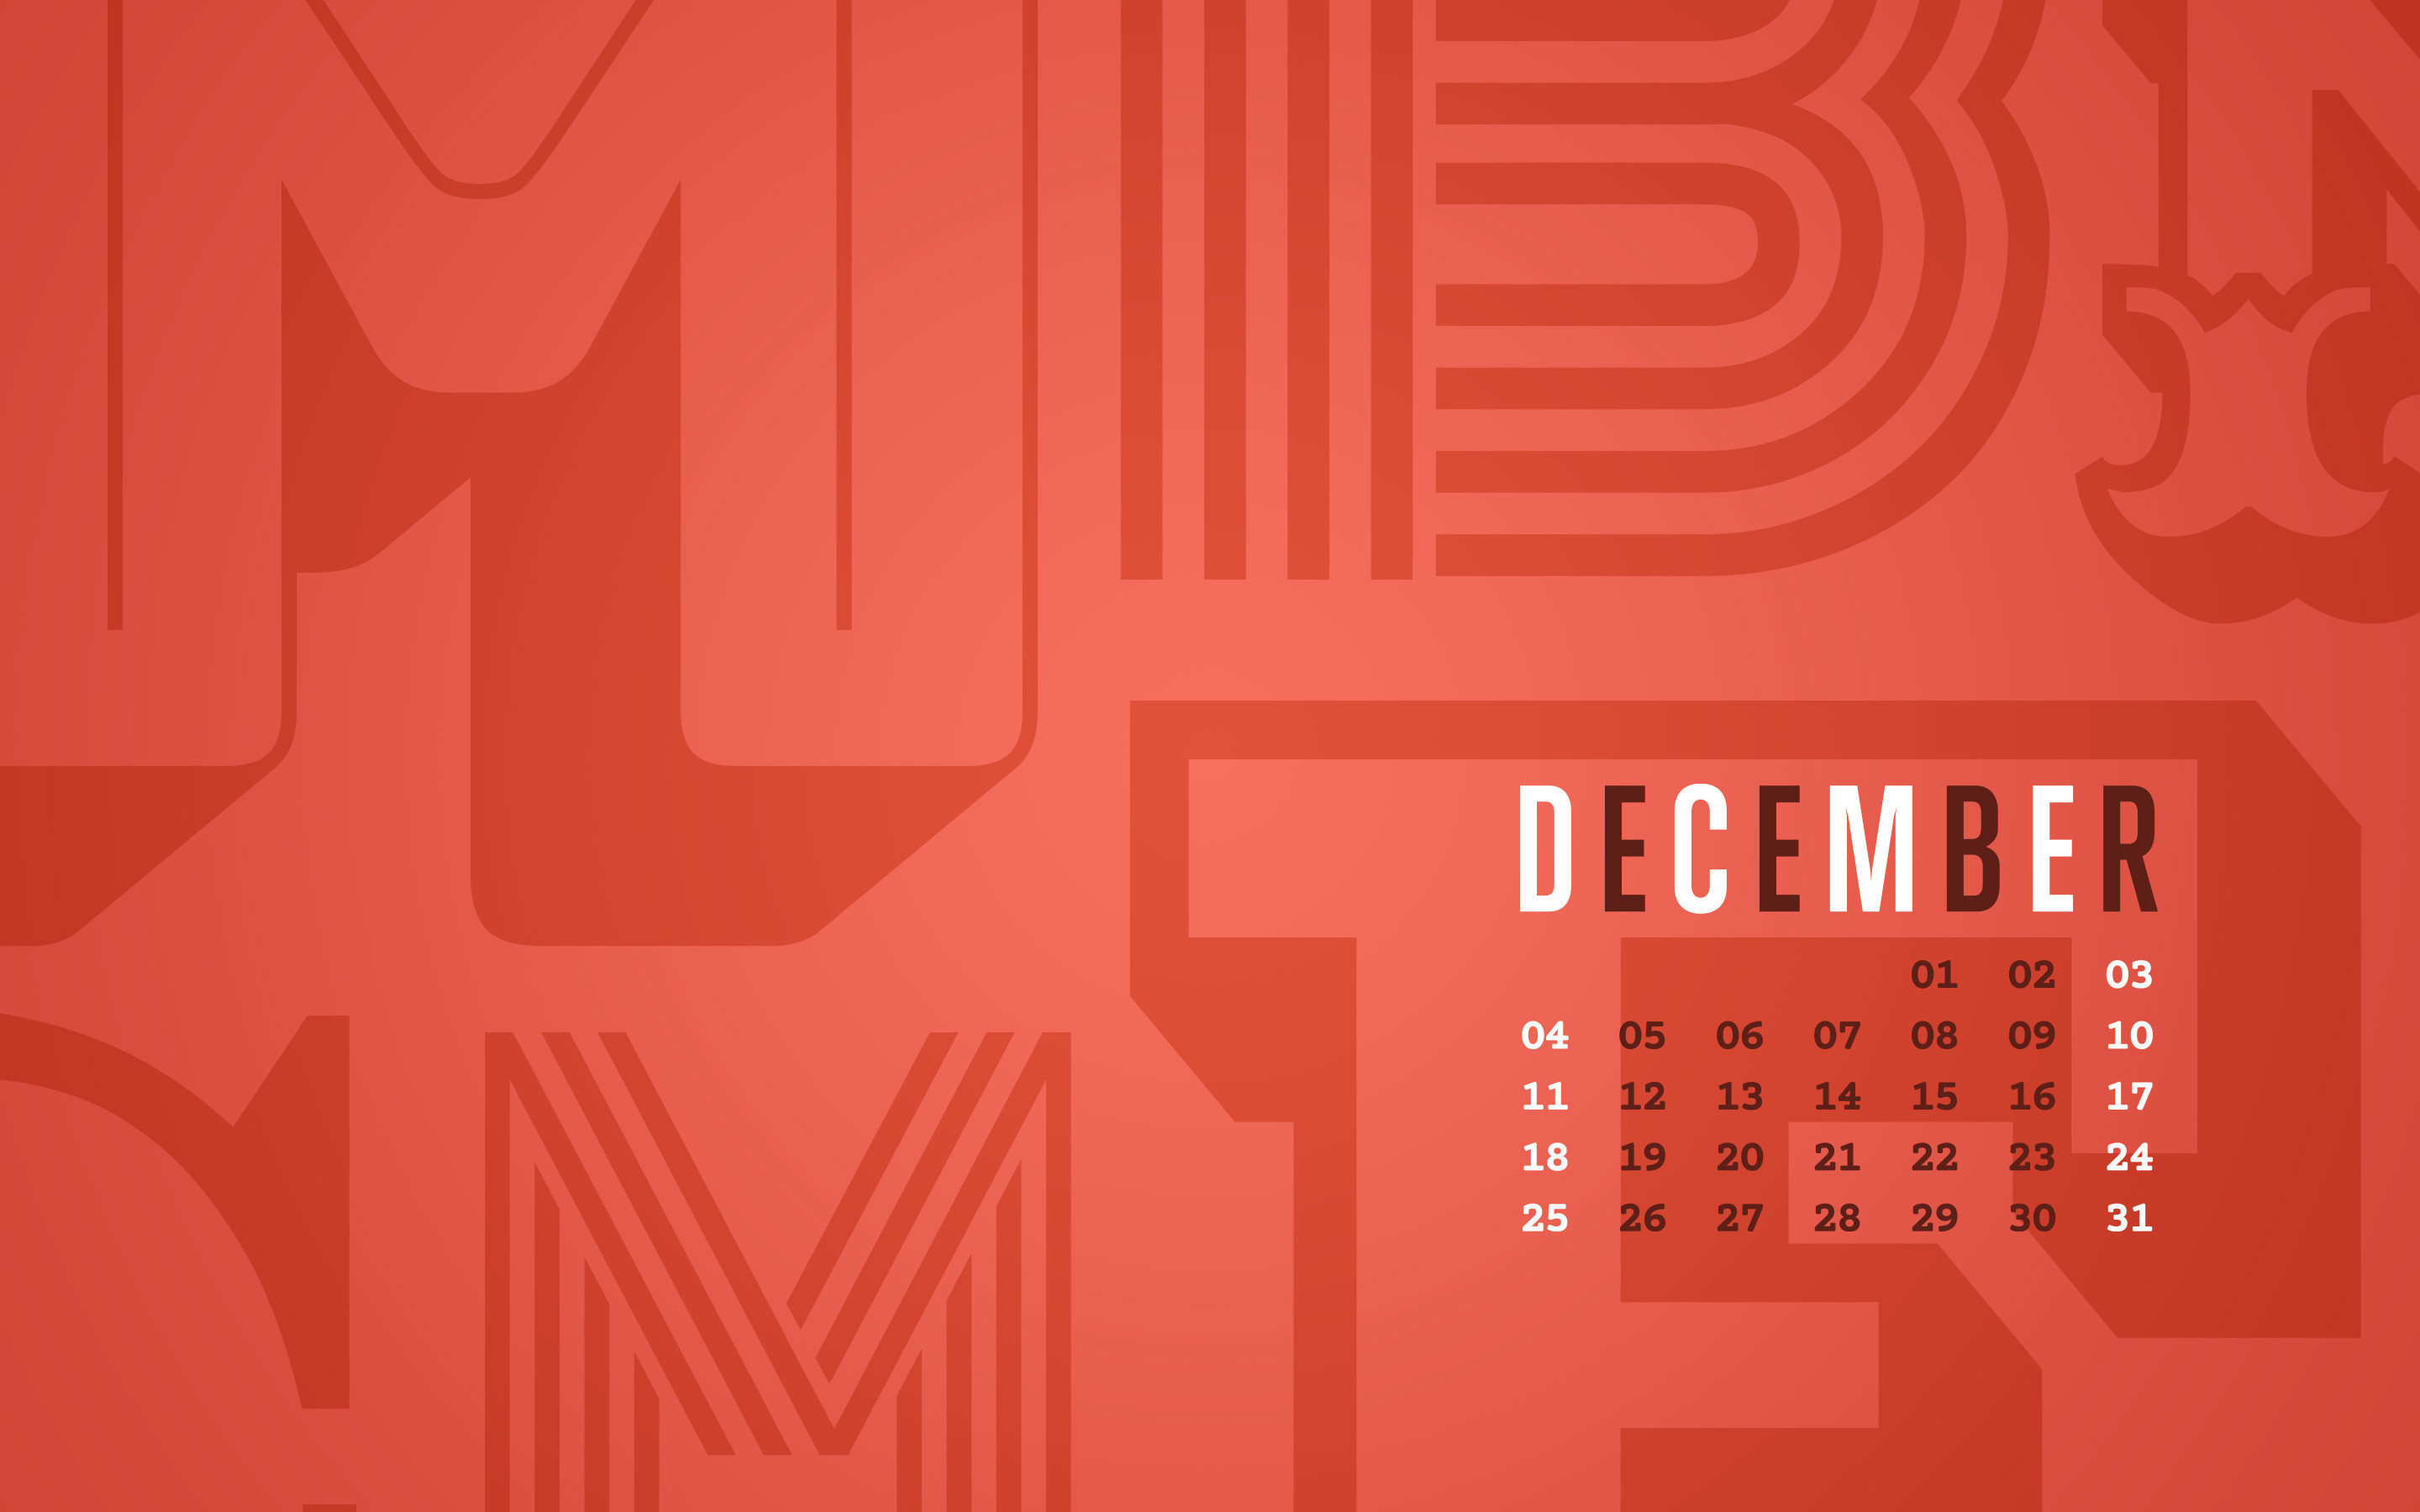 December 2016 Desktop Calendar Wallpaper